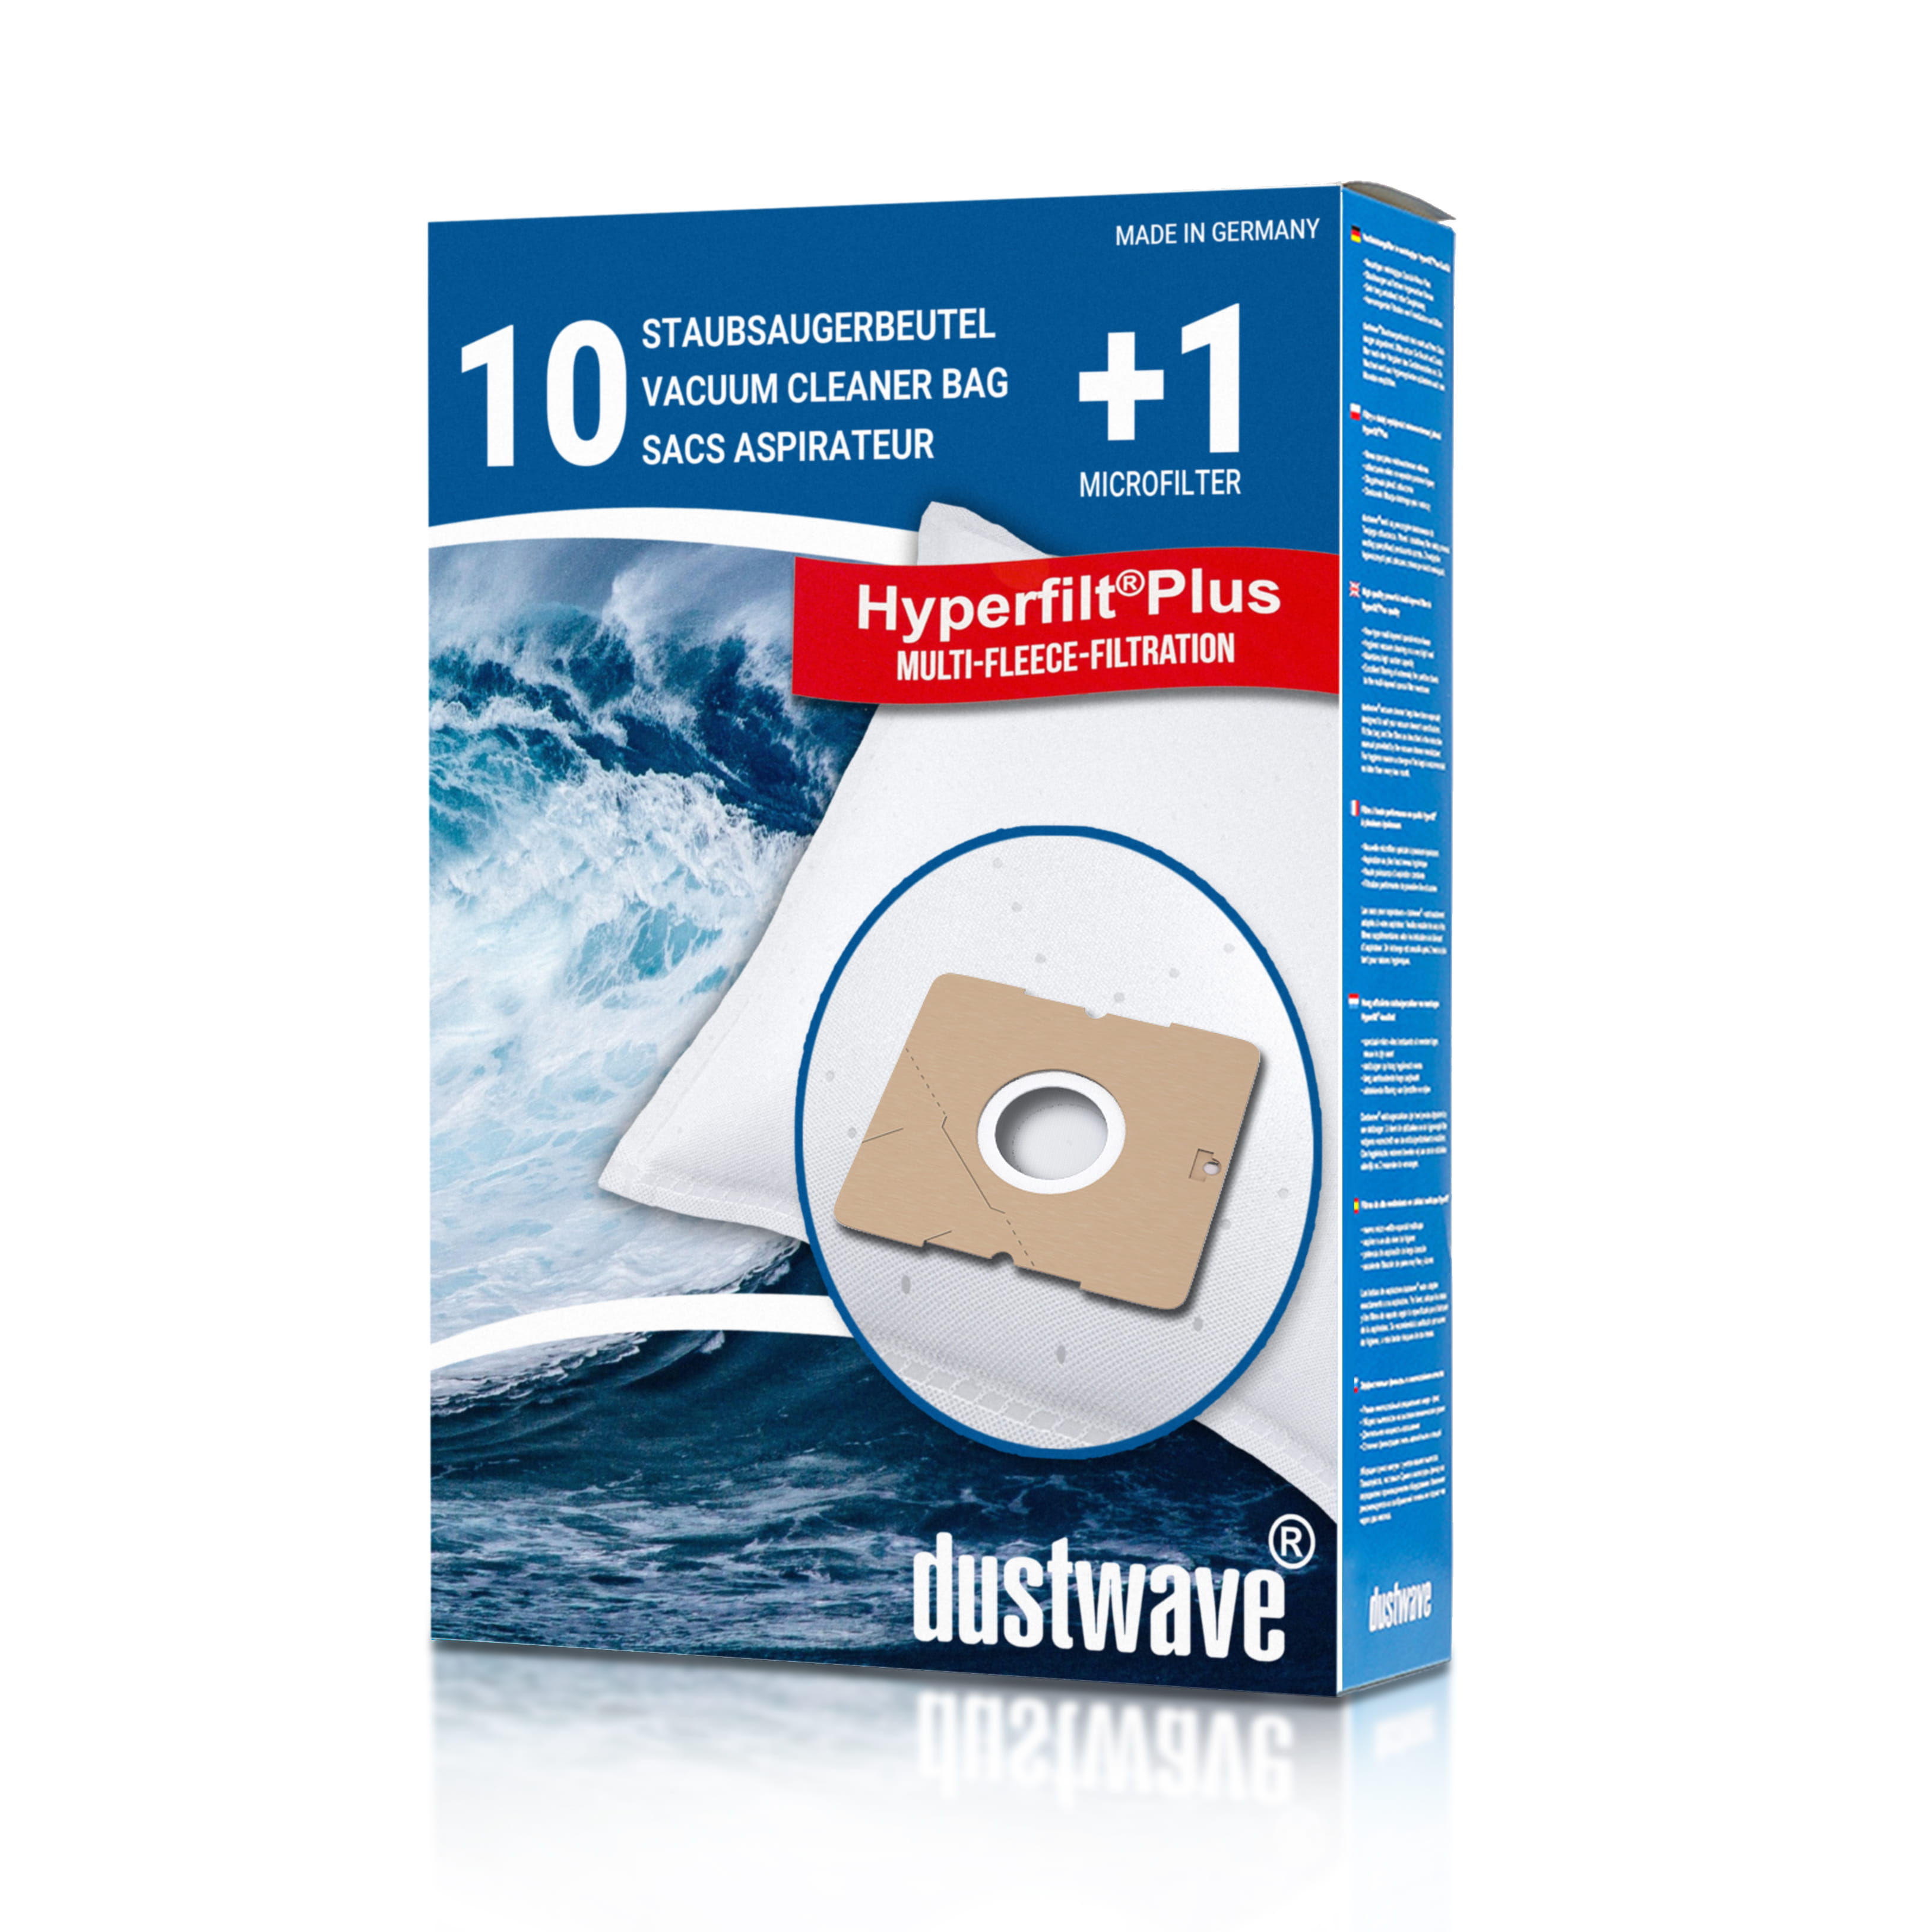 Dustwave® 10 Staubsaugerbeutel für Clean-Maxx KPA09E-9 - hocheffizient mit Hygieneverschluss - Made in Germany